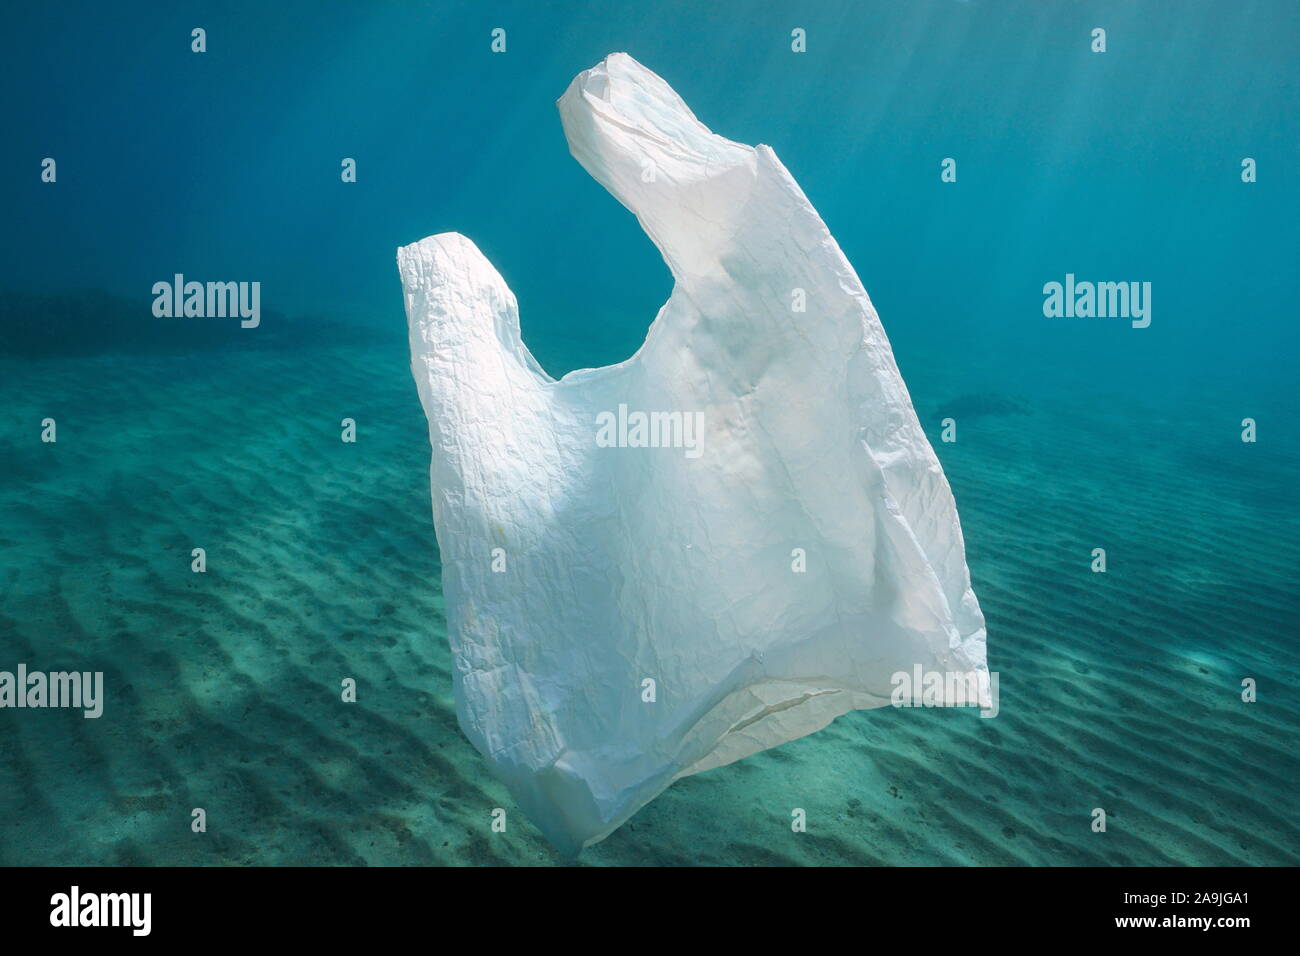 Contaminación de plástico, una bolsa de plástico blanco en el océano submarino Foto de stock